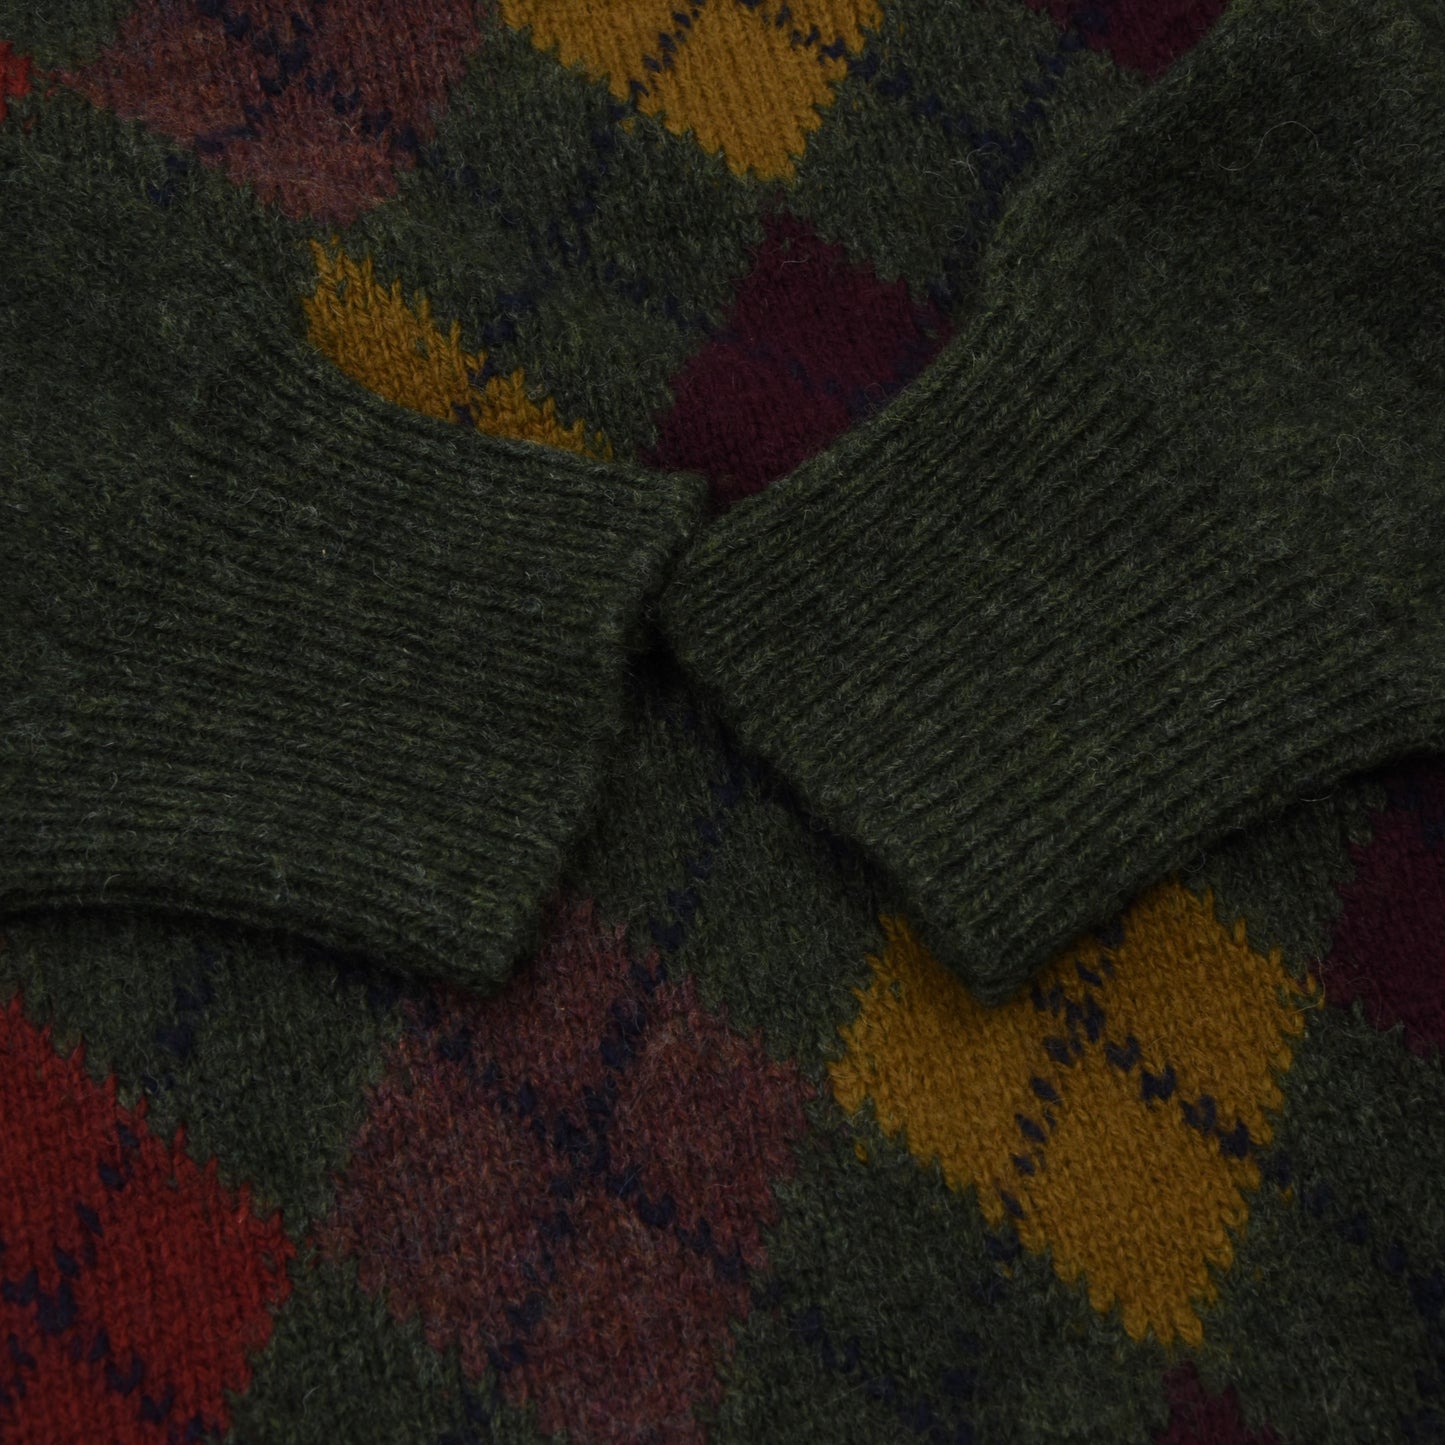 Wolsey Wool Argyle Sweater Size 54/44 - Green/Argyle